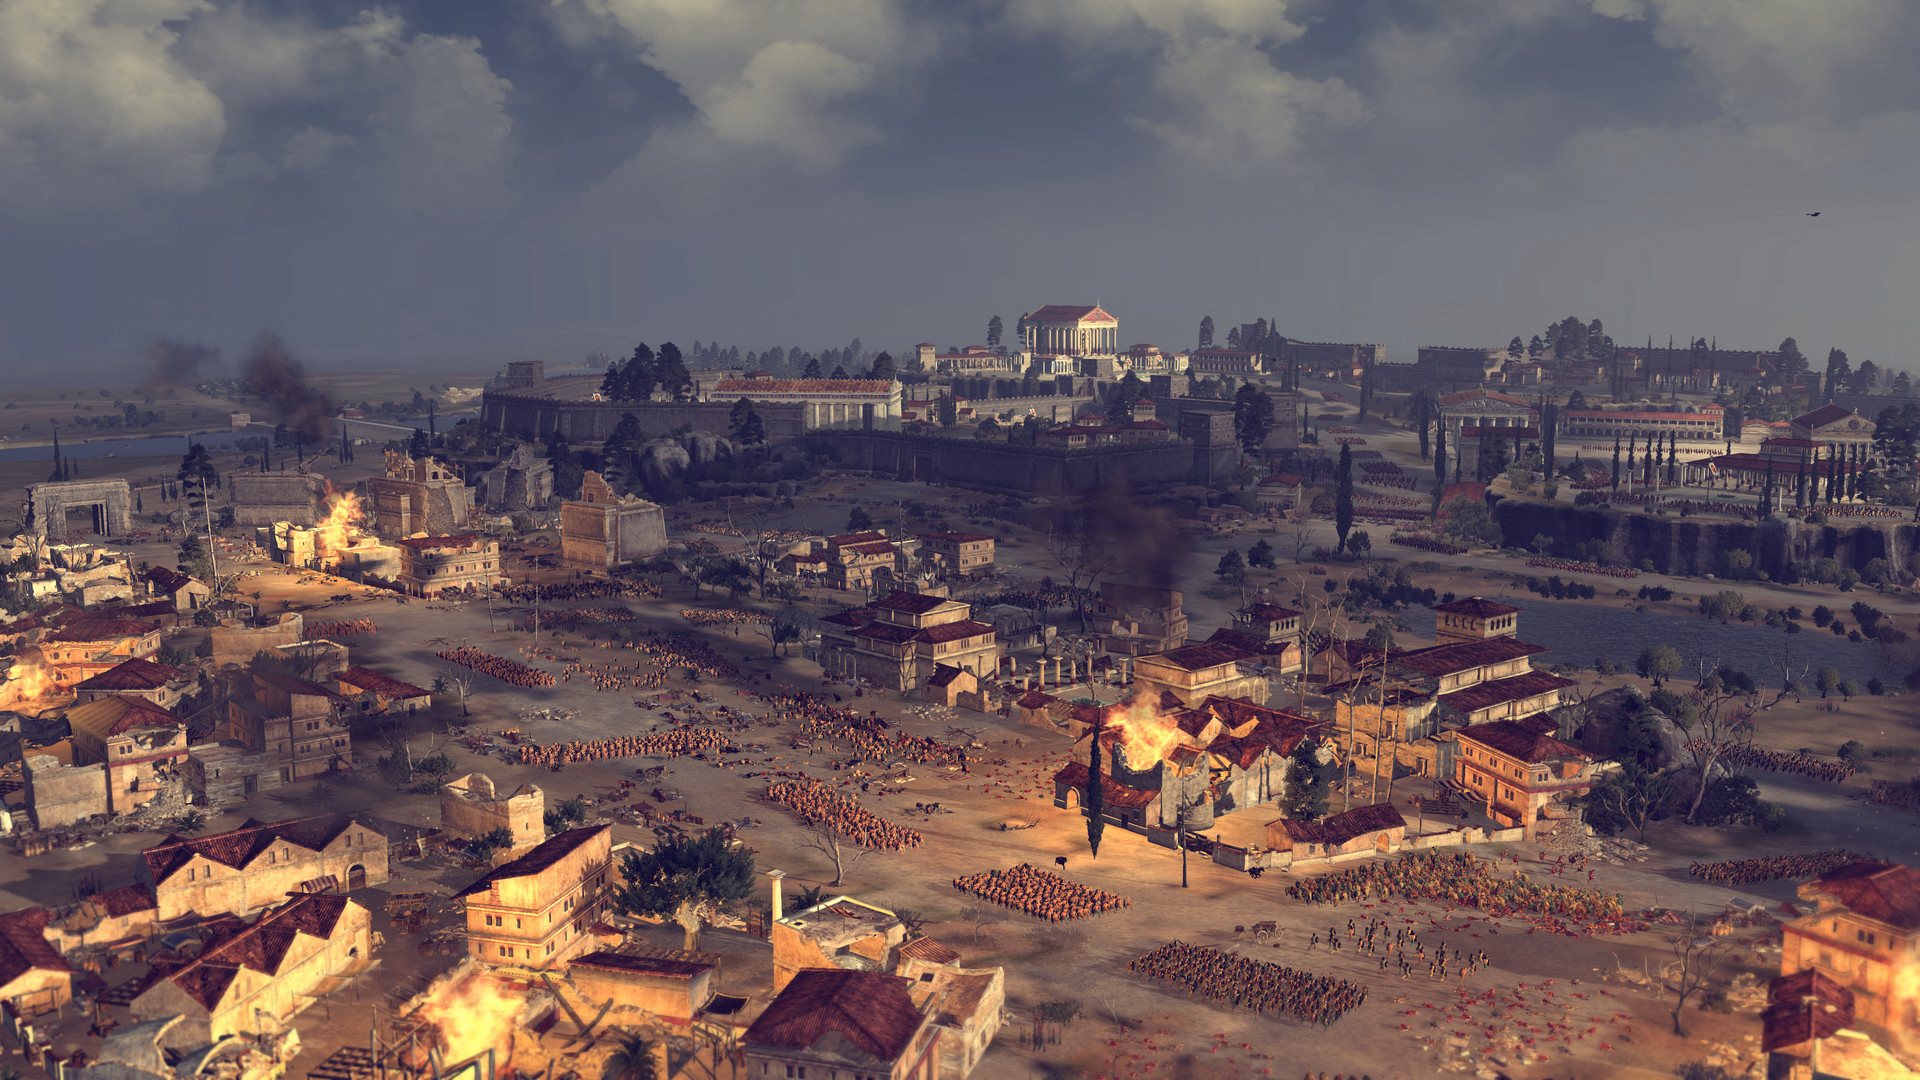 Total War: ROME II - Rise Of The Republic Campaign Pack DLC EU Steam CD Key